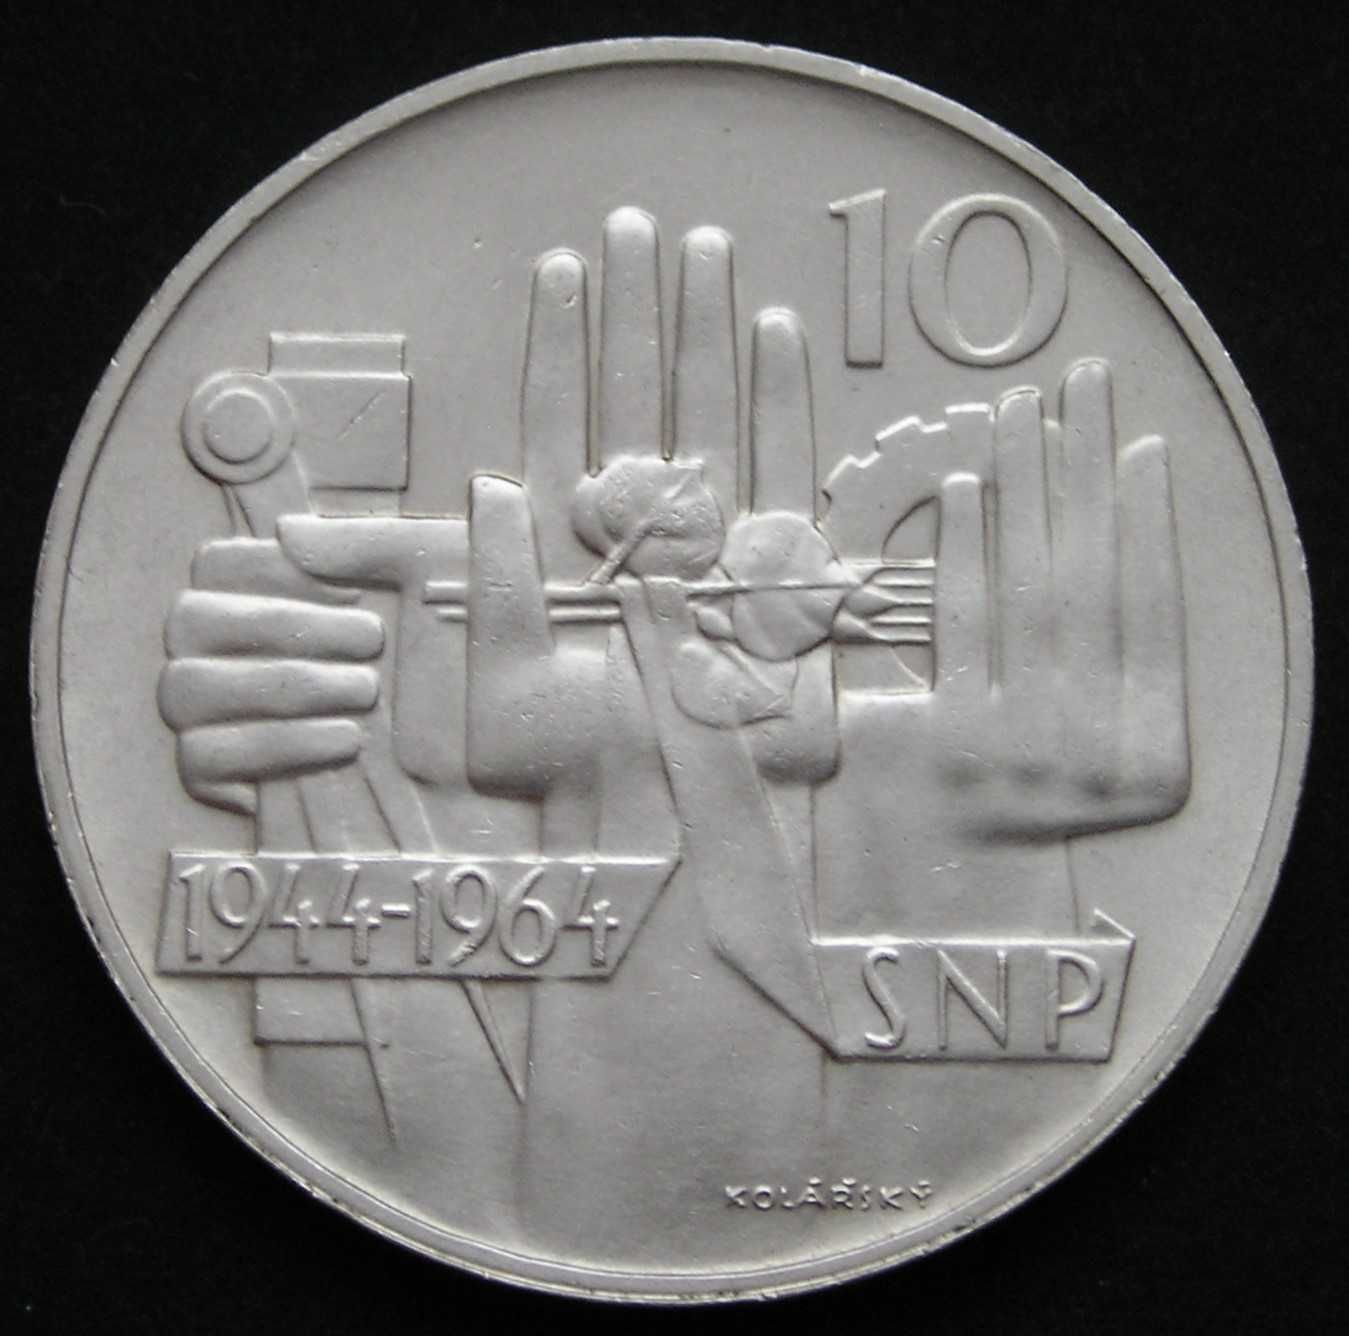 Czechosłowacja 10 koron 1964 - SNP - srebro